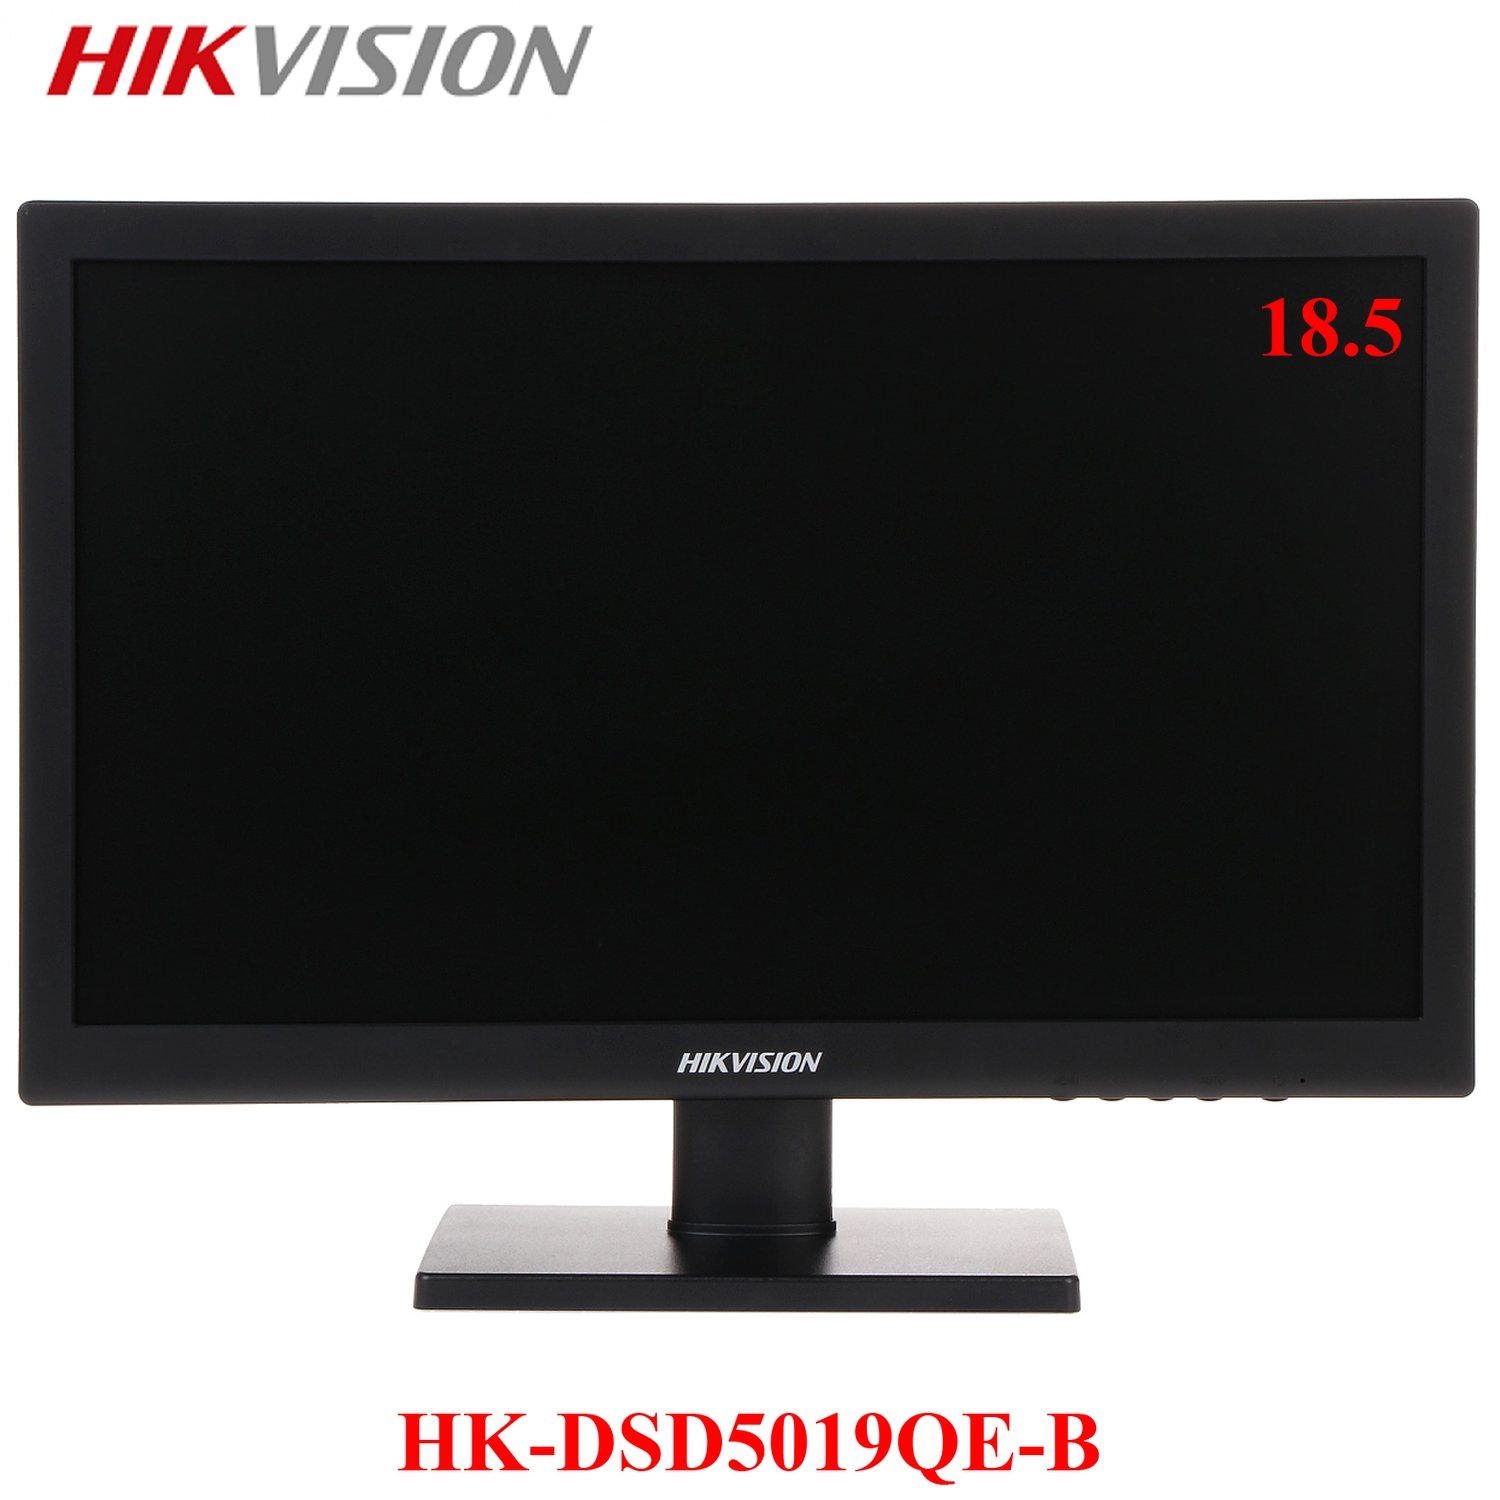 MONITOR HIKVISION 18.5" | HDMI - VGA